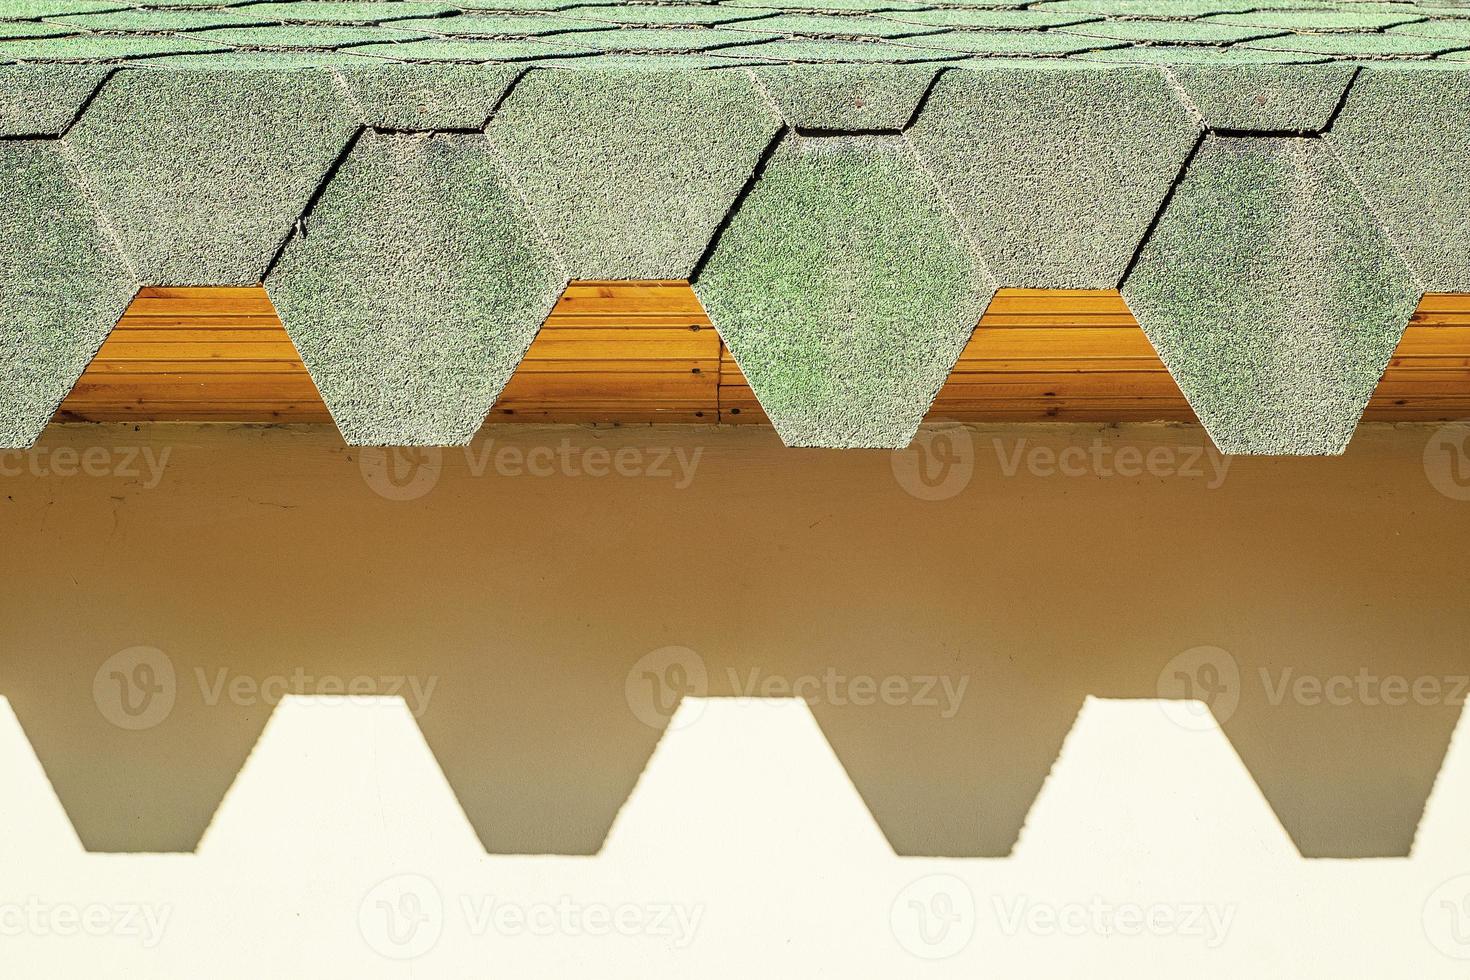 toit vert avec tuiles hexagonales. toit aux bords dentelés projetant des ombres dures sur le mur. photo